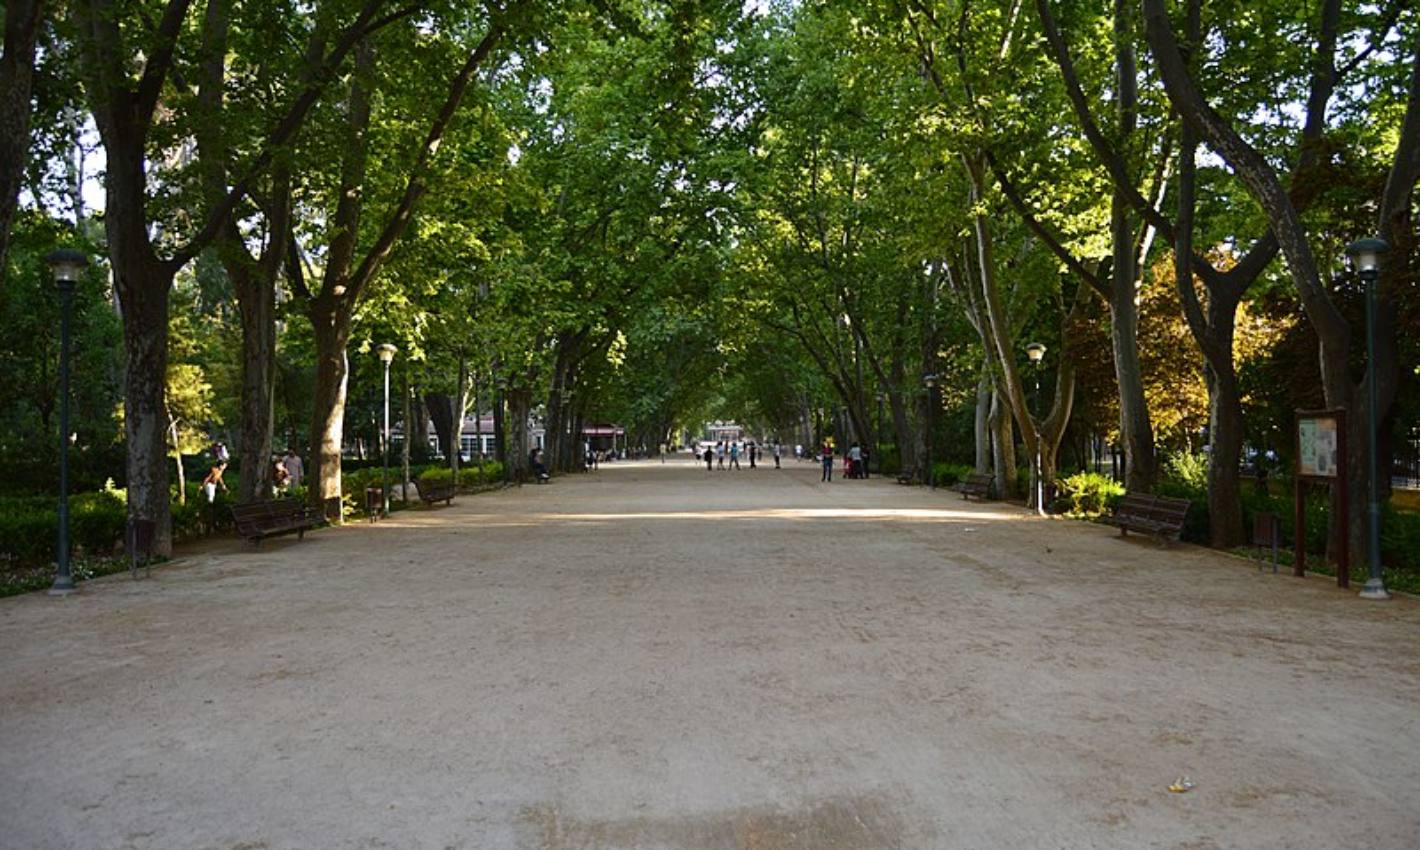 Imagen de archivo del parque Abelardo Sánchez, Albacete.